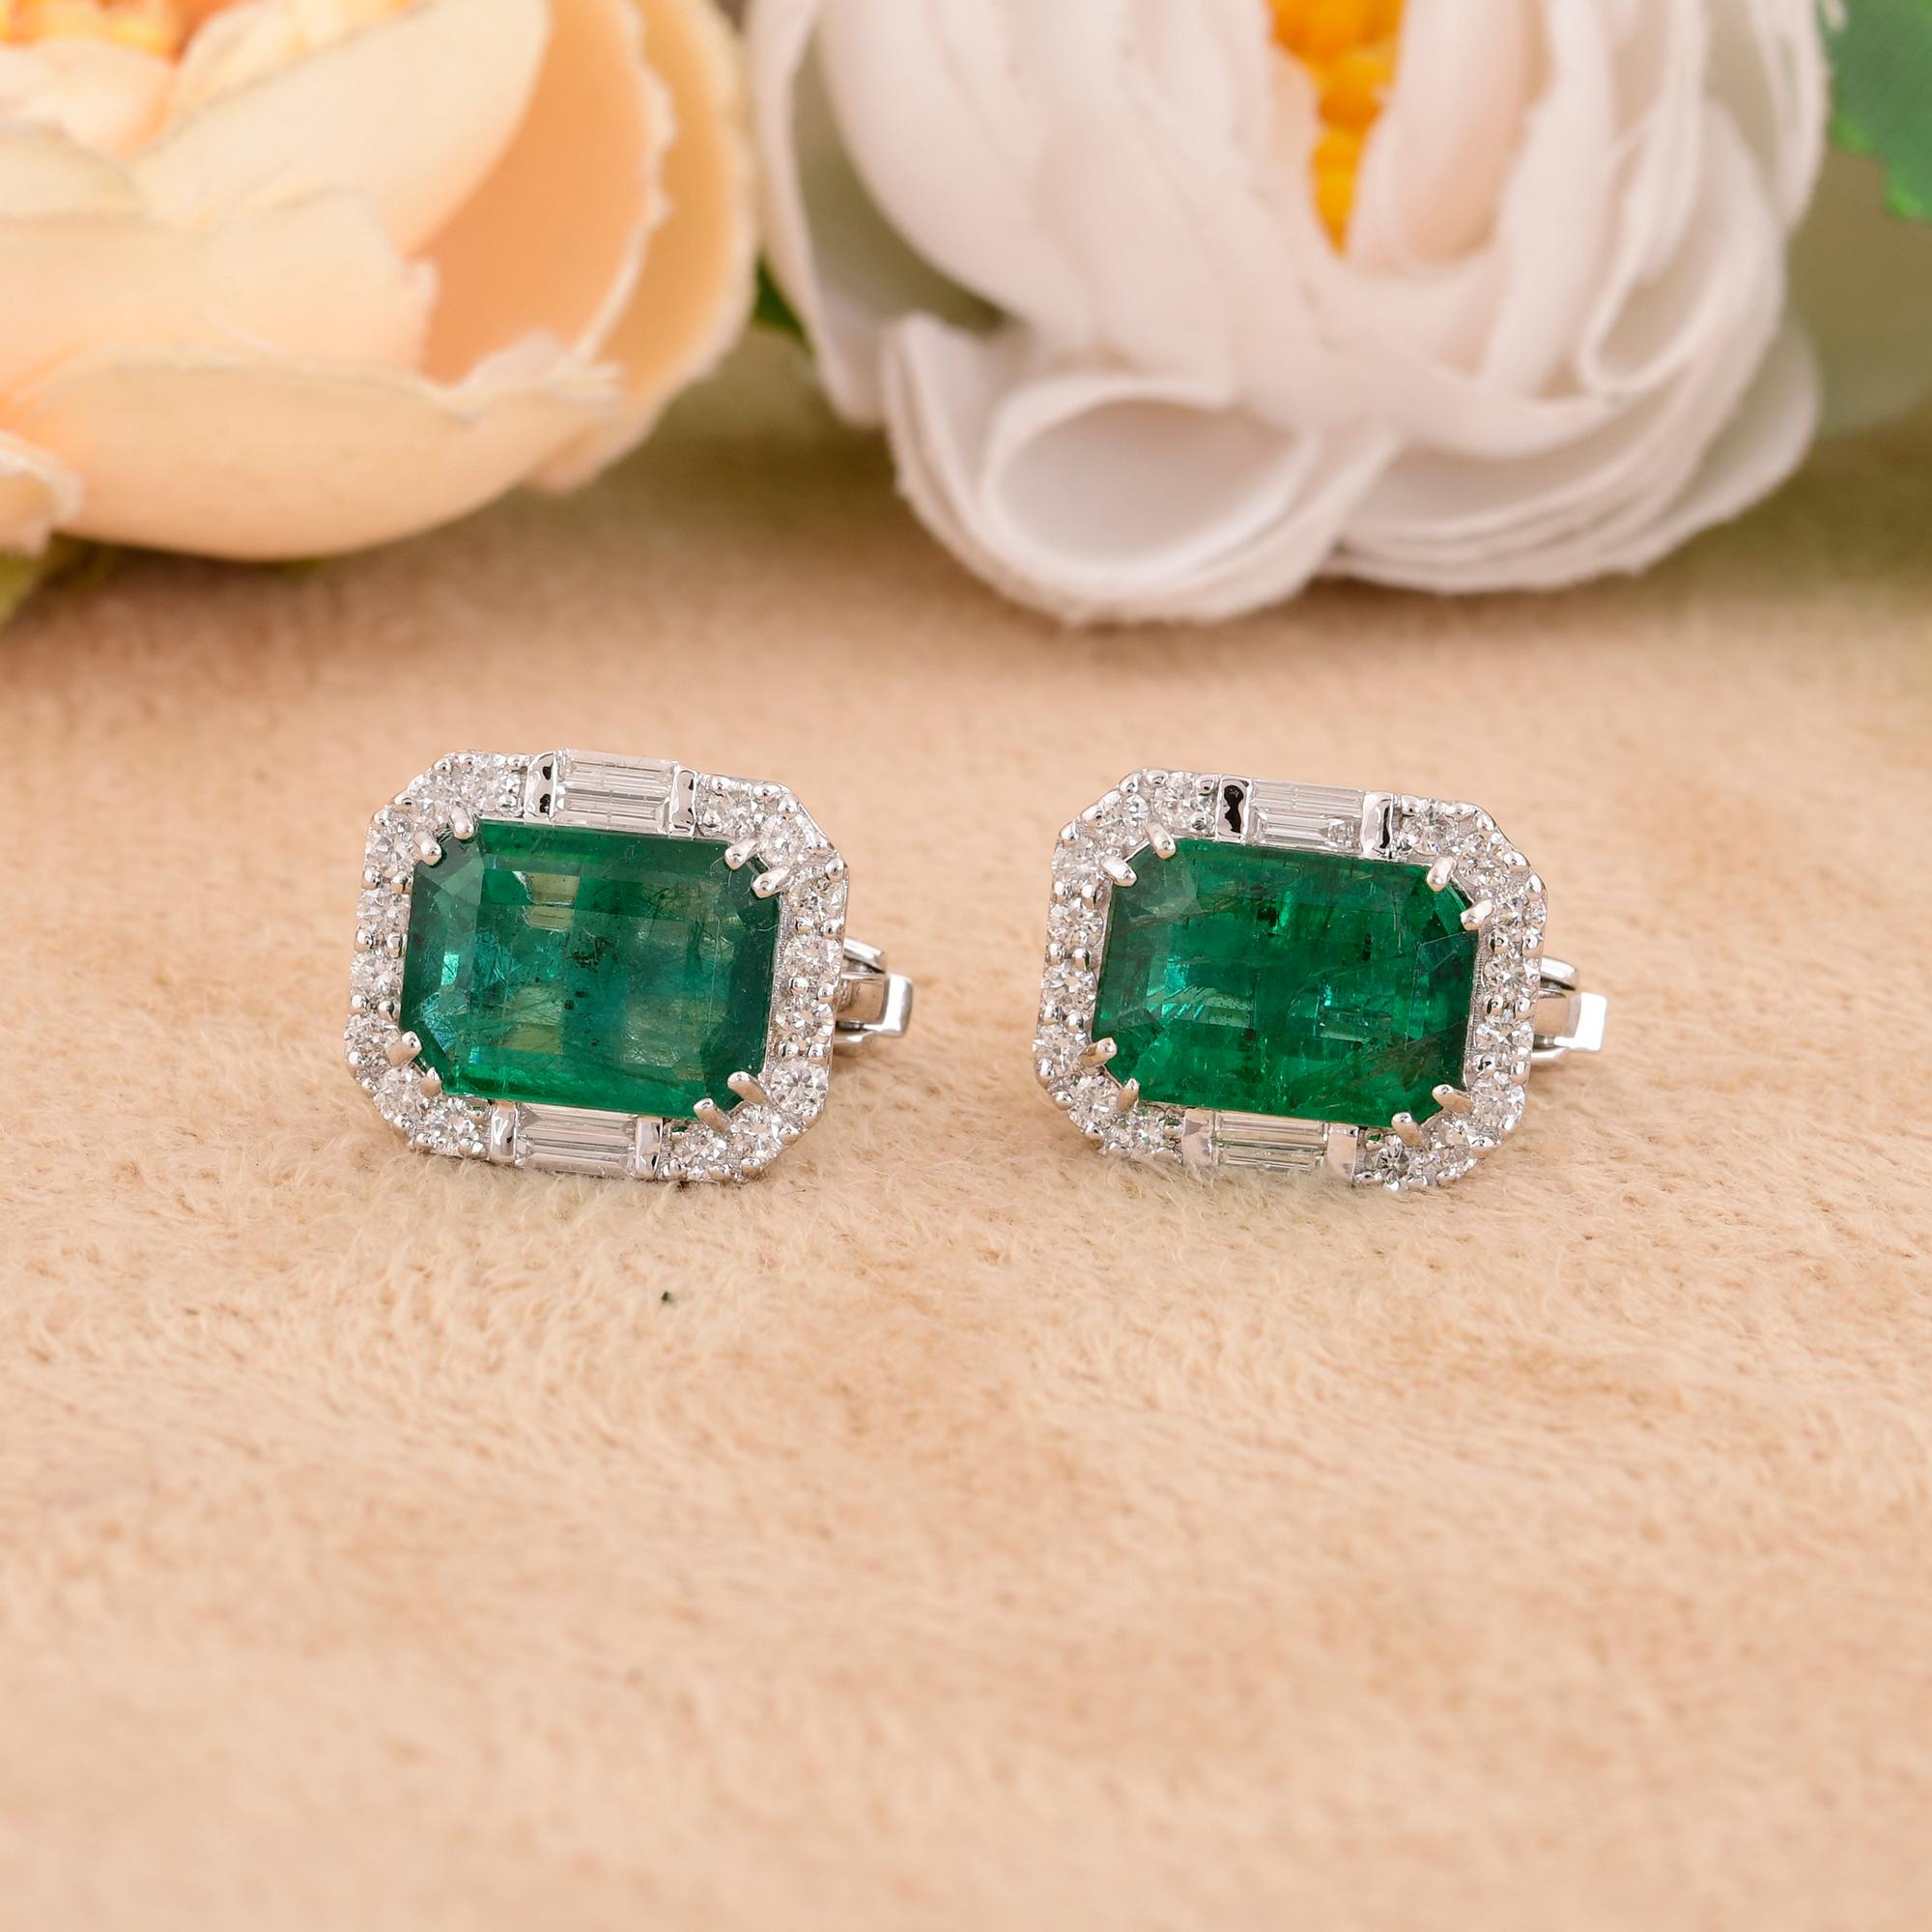 Emerald Cut Zambian Emerald Gemstone Stud Earrings Diamond 18 Karat White Gold Fine Jewelry  For Sale